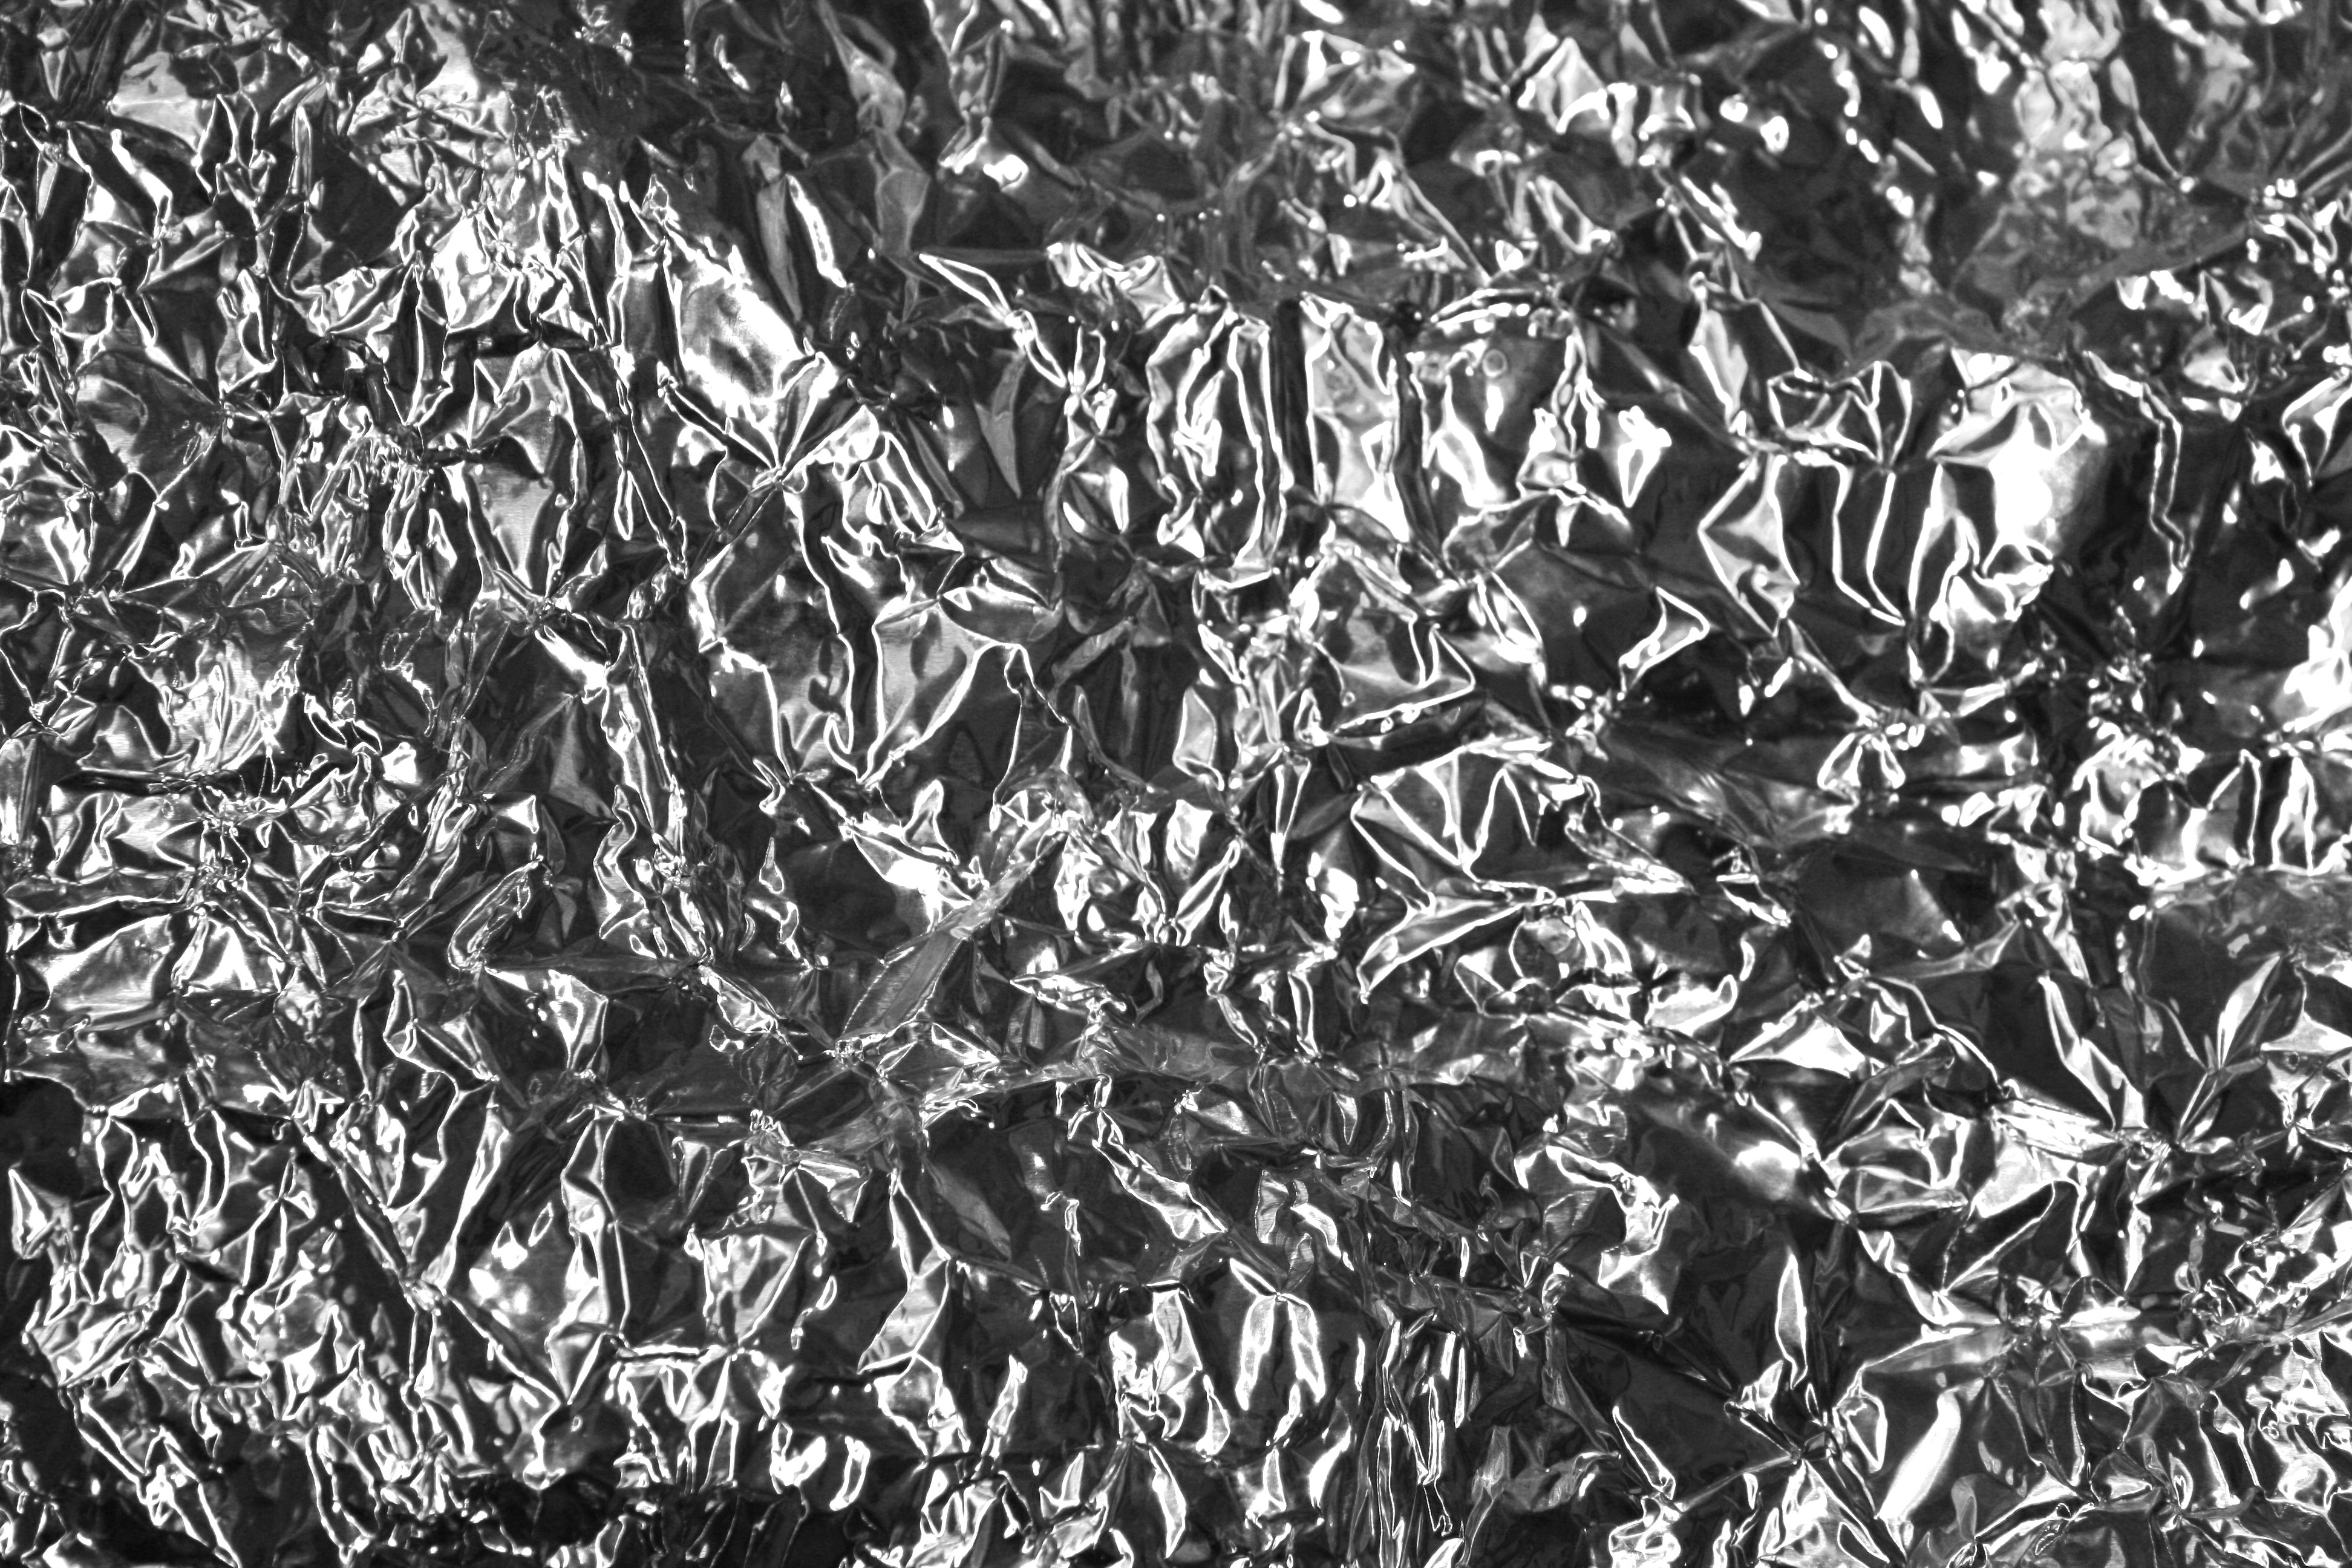  of wrinkle gold foil paper stock photo xpx aluminum foil texture